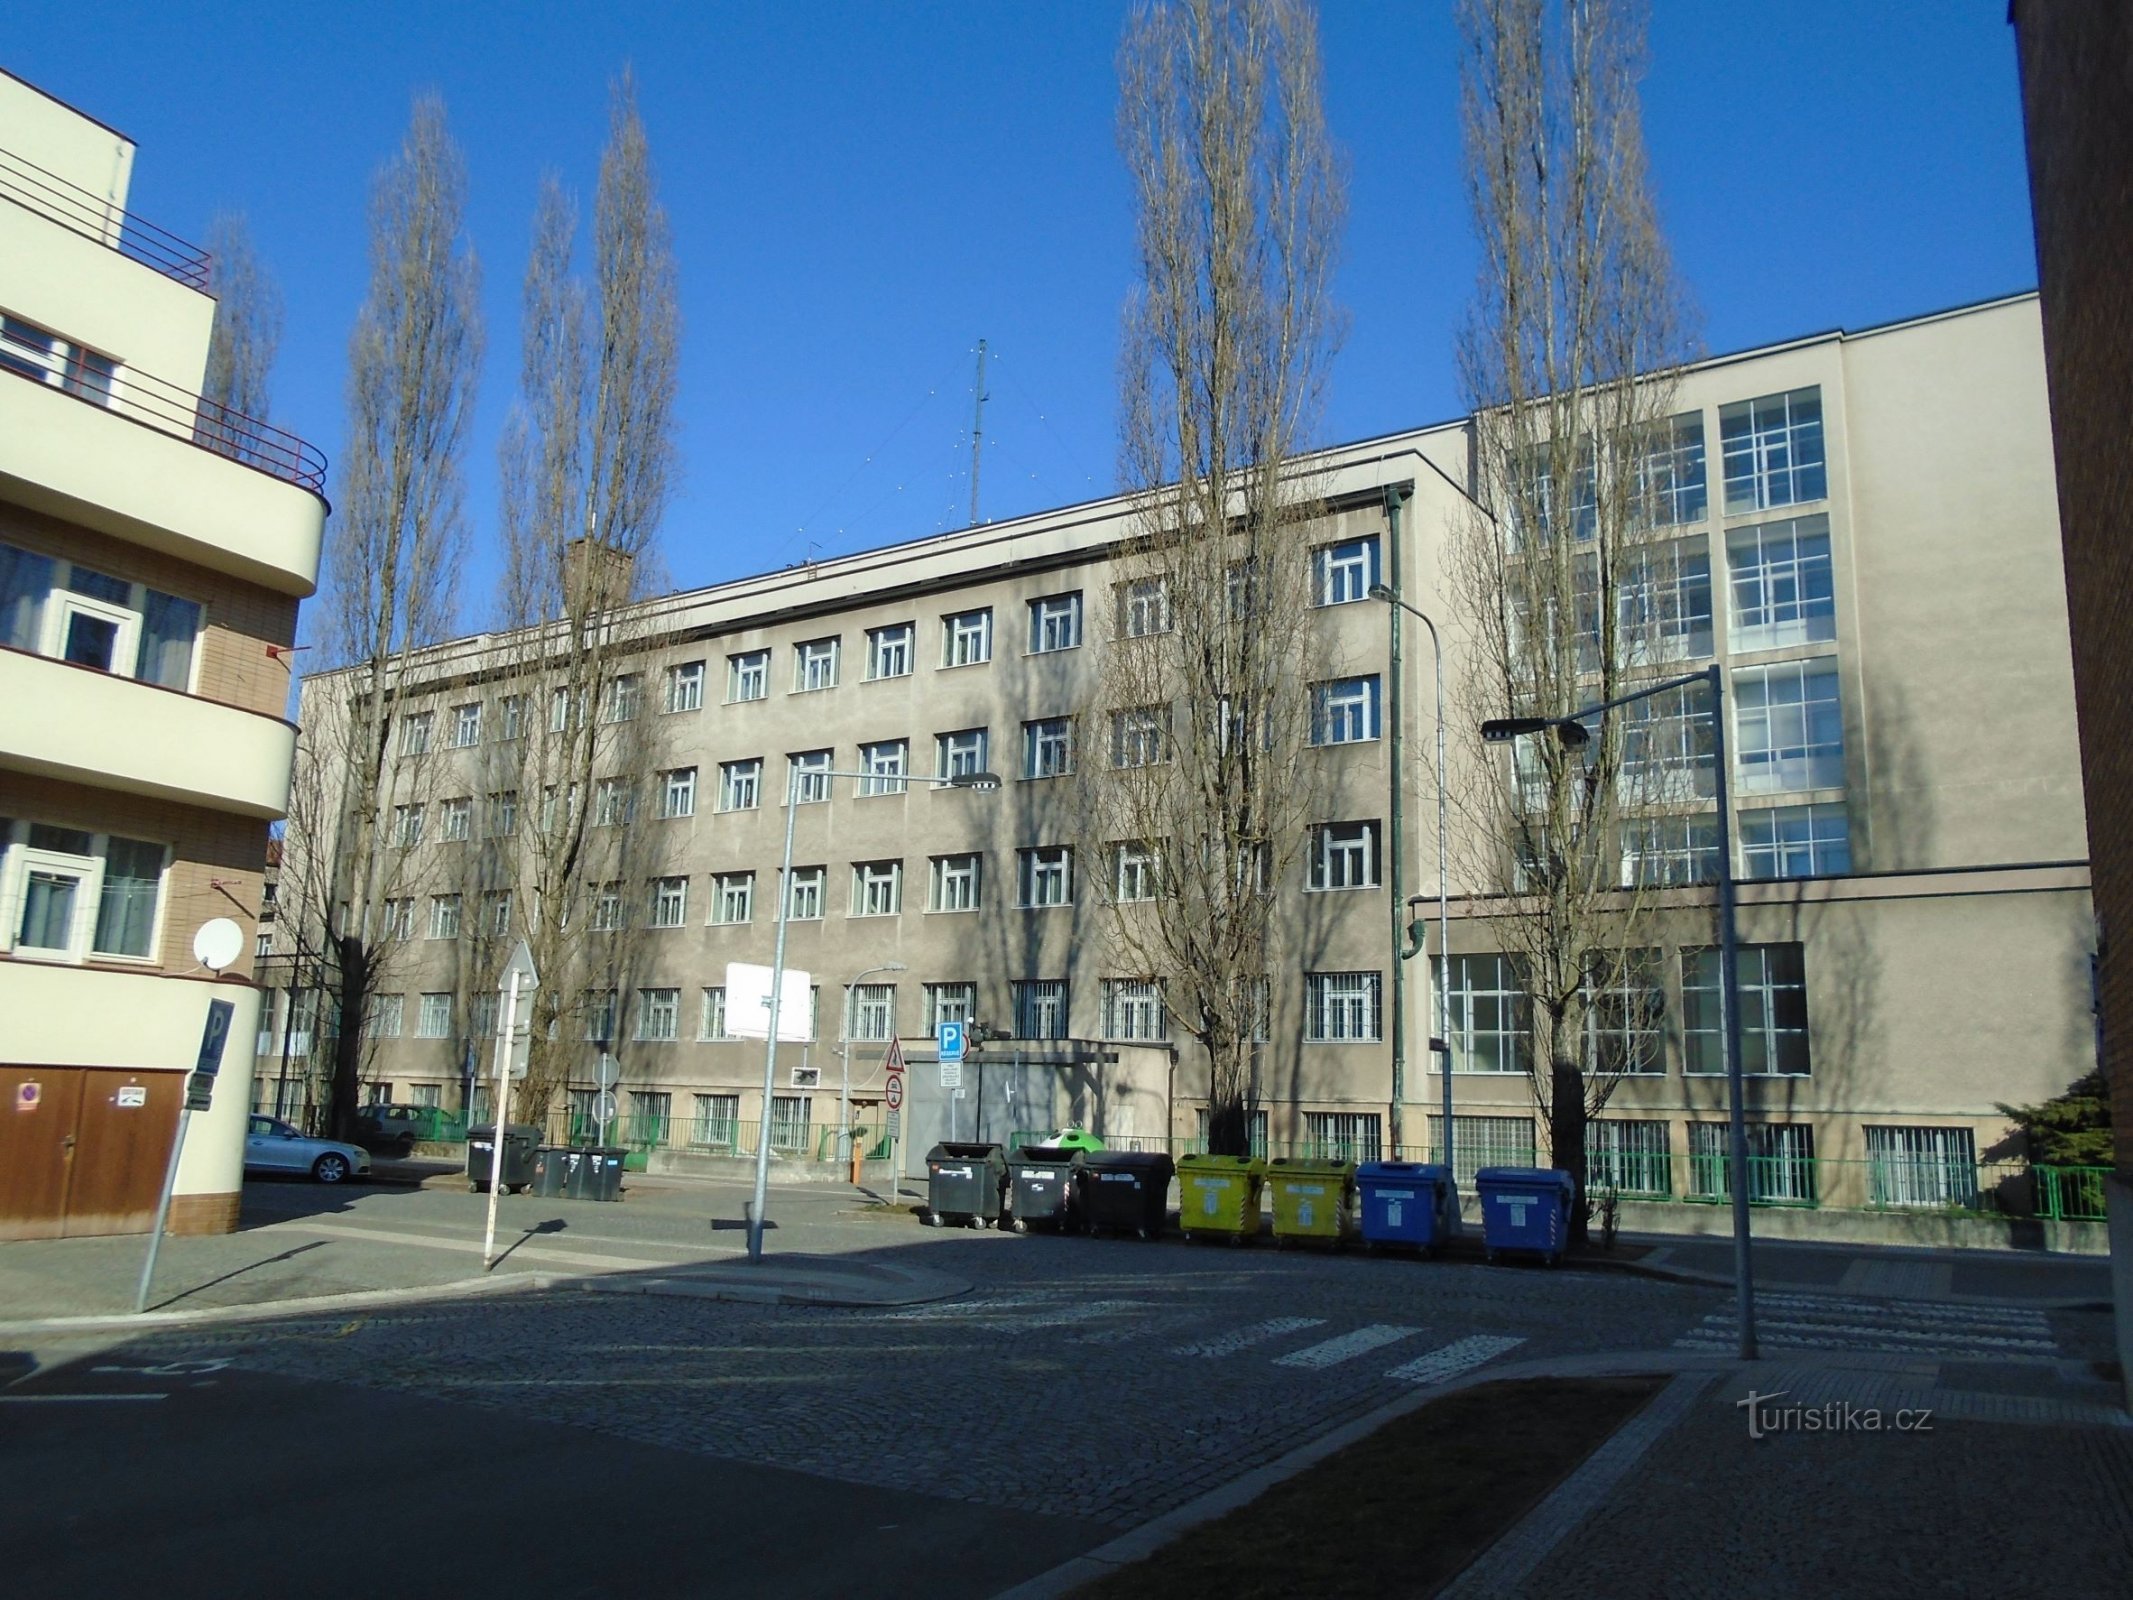 Ulrichovo náměstí Nr. 810 (Hradec Králové, 25.2.2018)